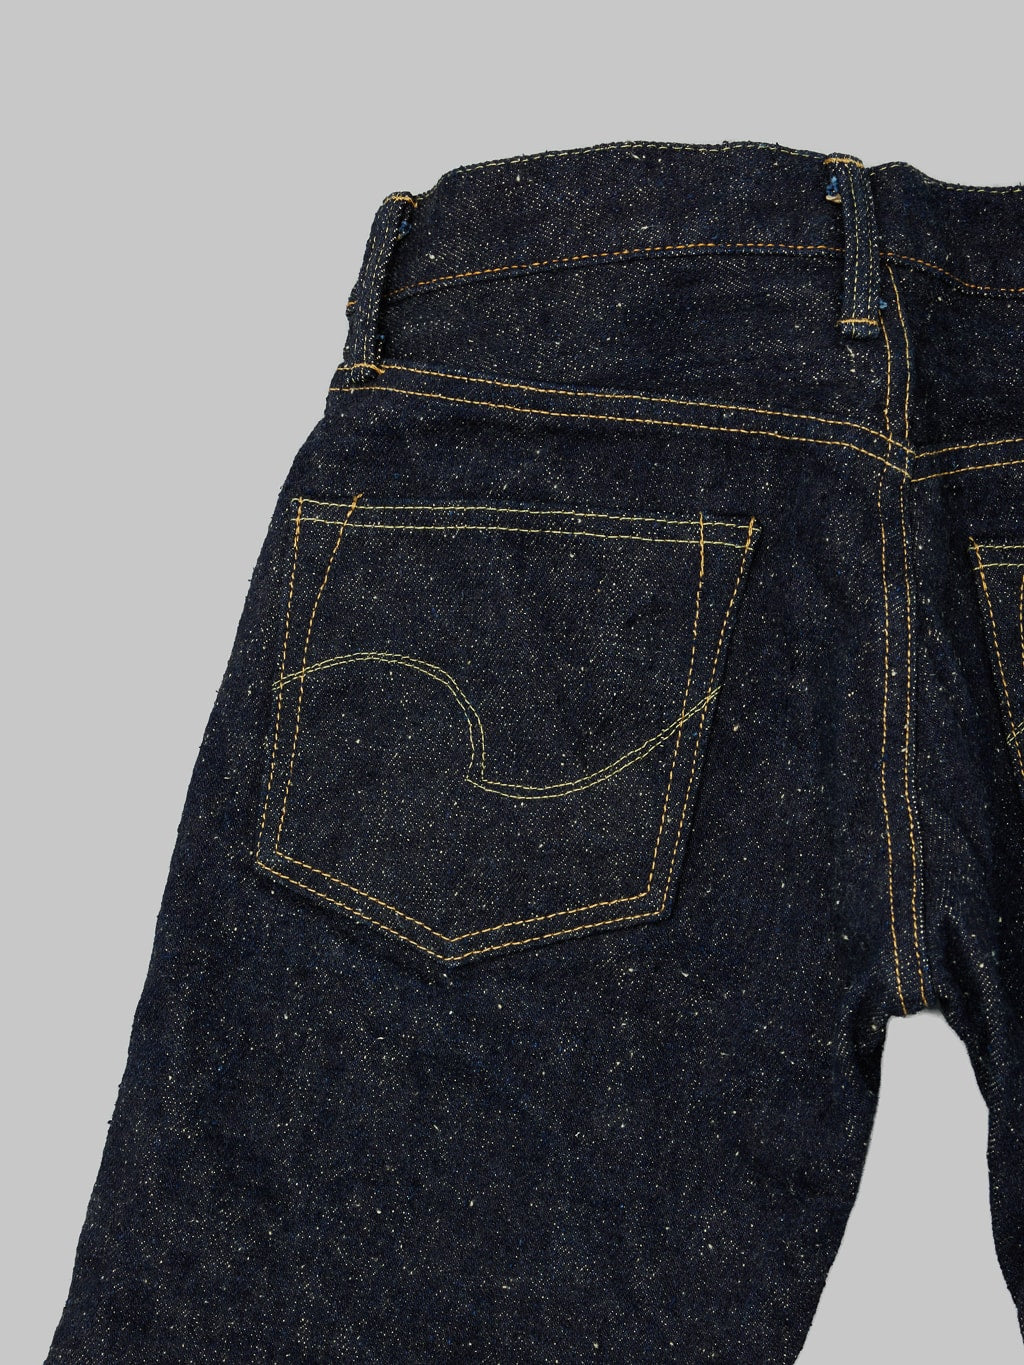 ONI Denim 288 Asphalt 20oz Regular Straight Jeans back pocket detail